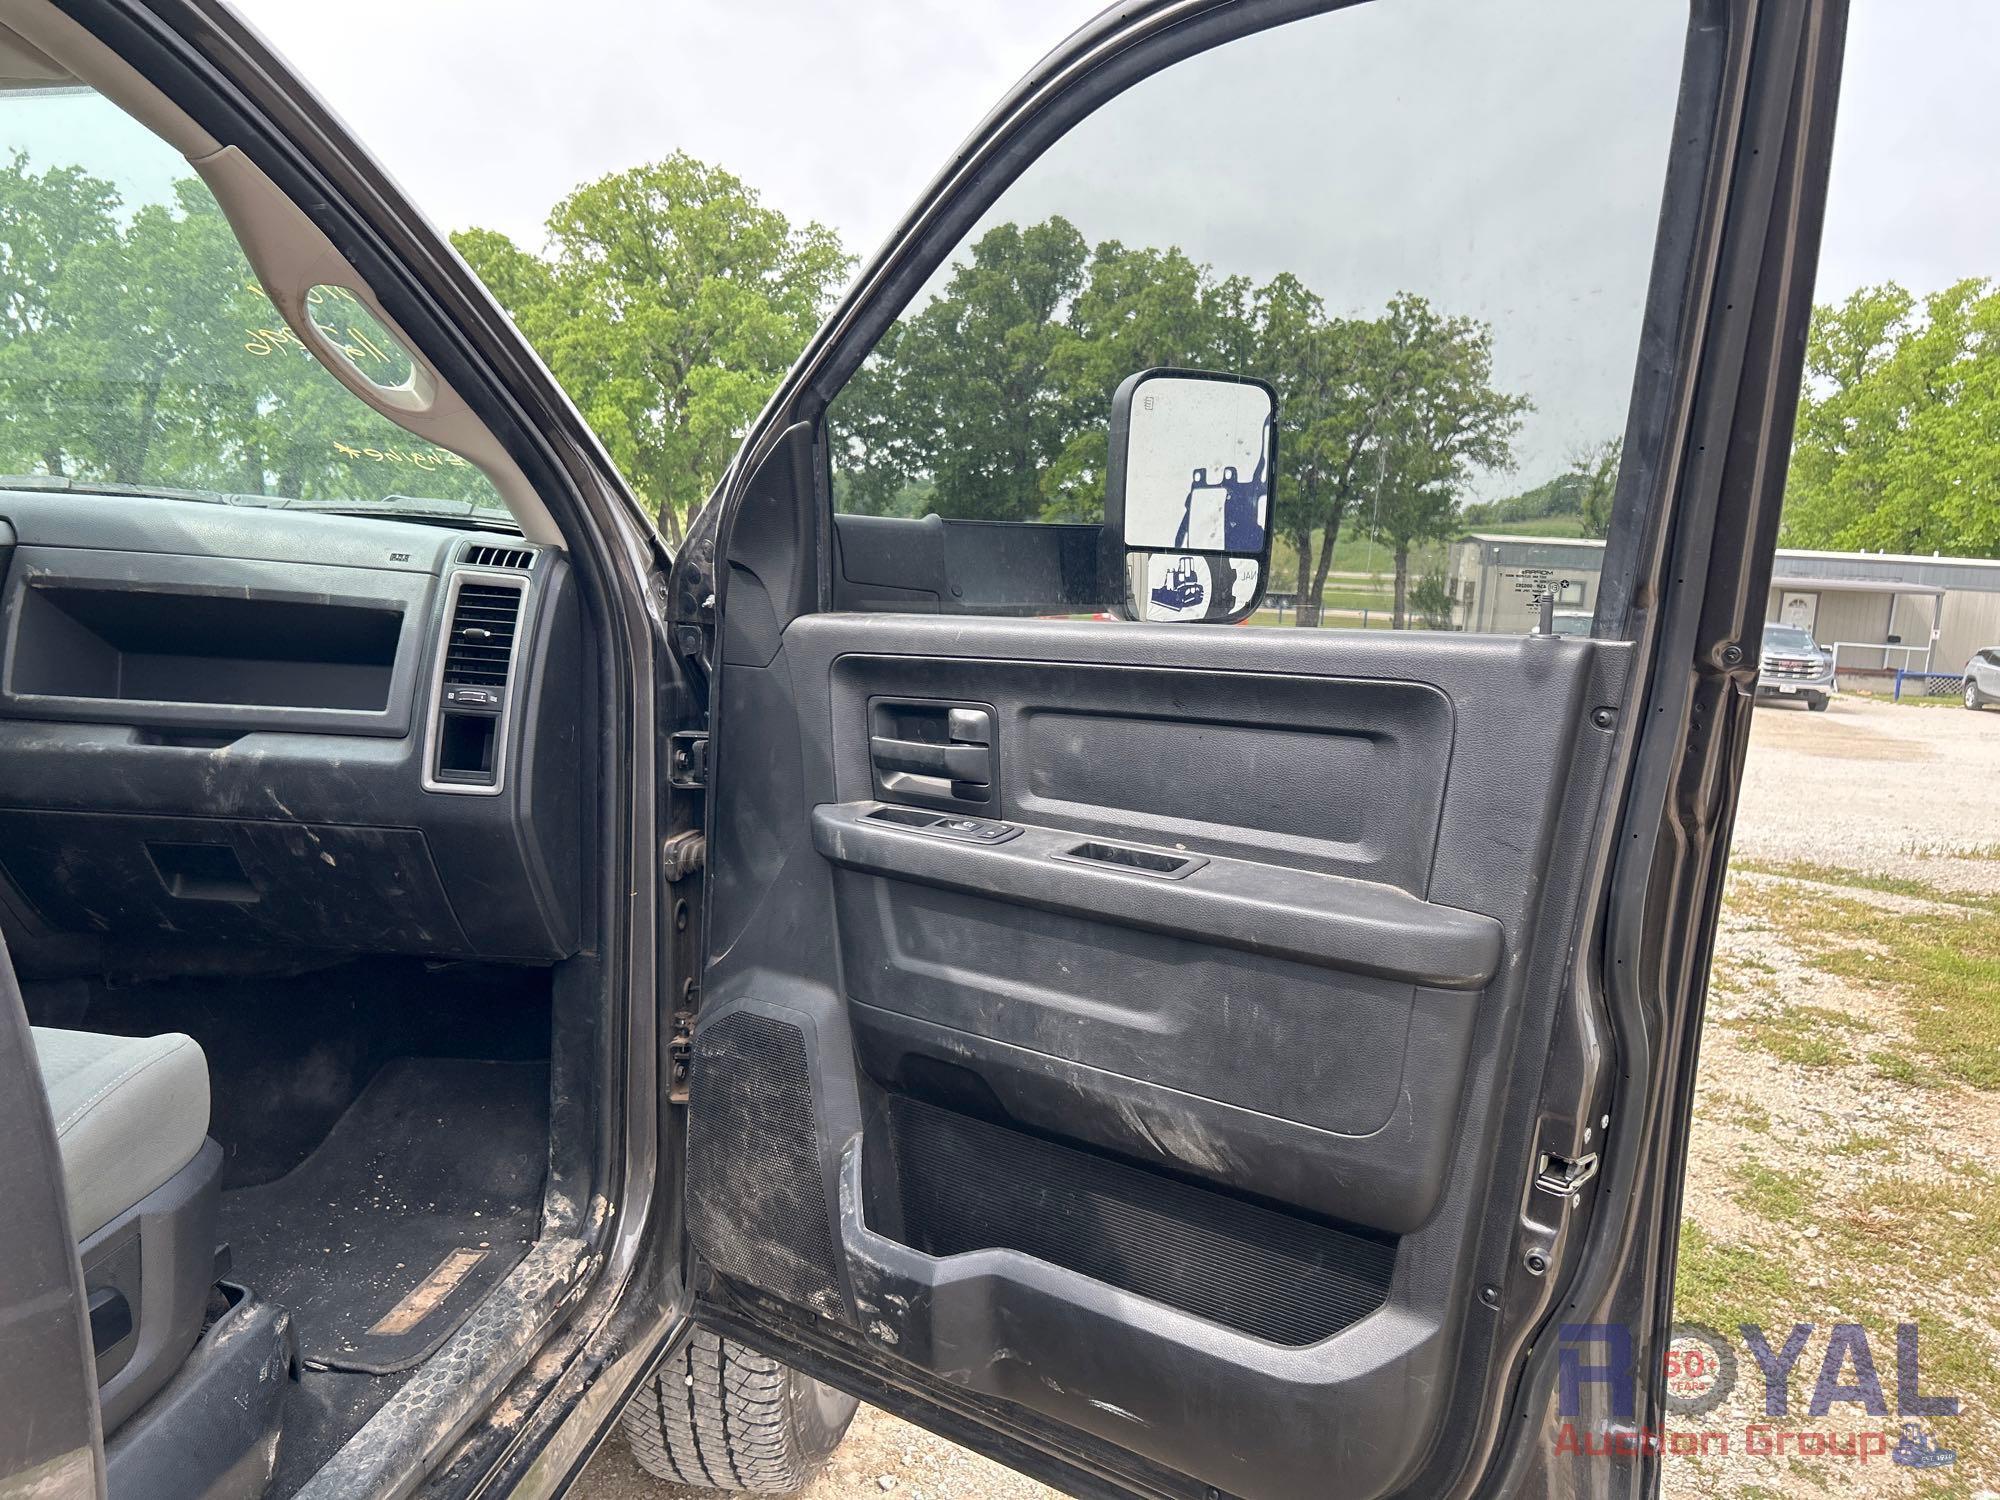 2018 Ram 2500HD 4x4 Crew Cab Pickup Truck